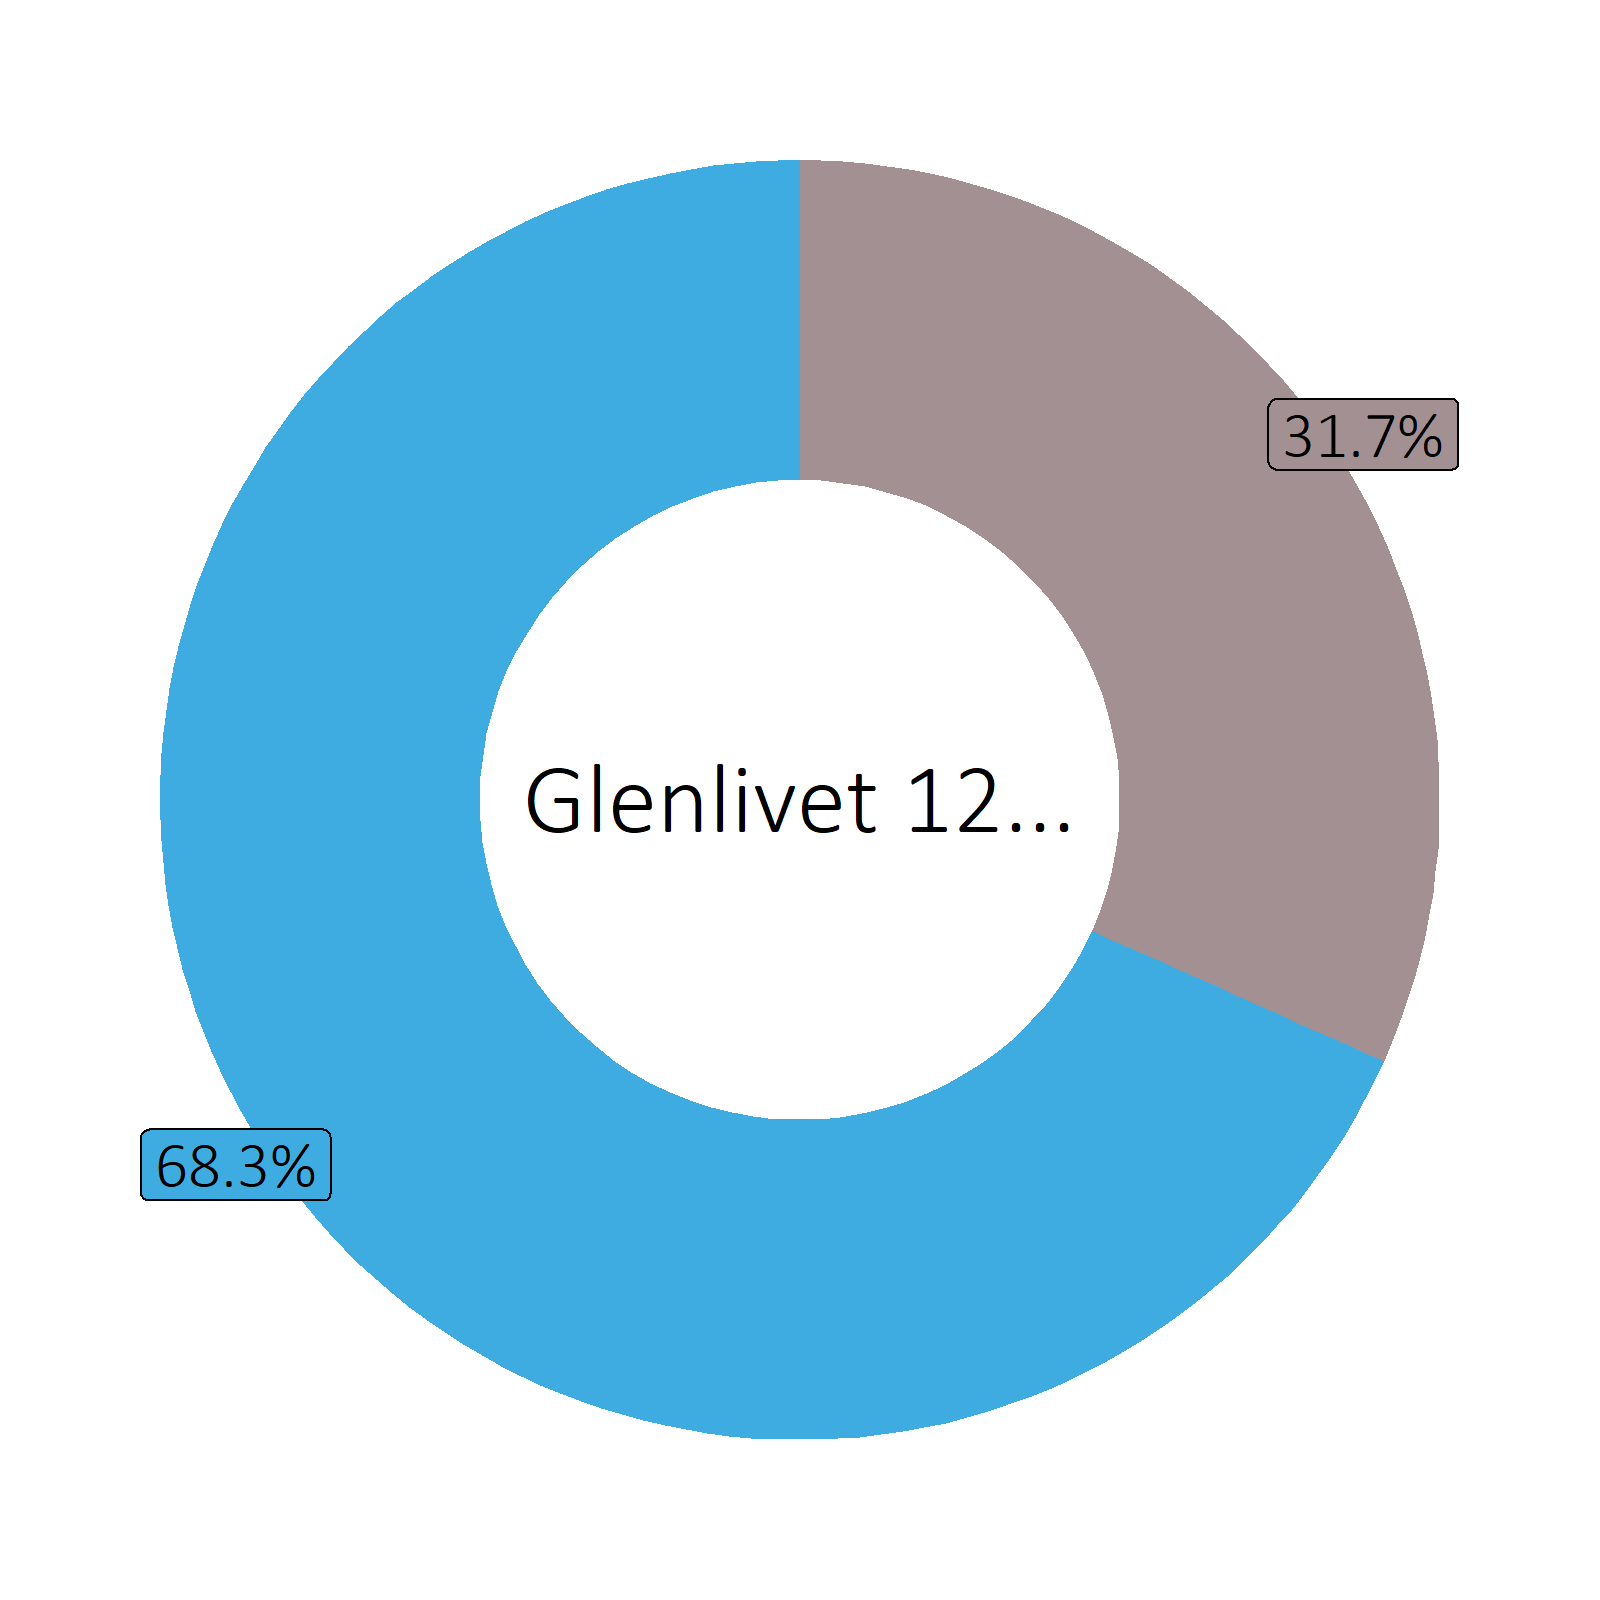 Bestandteile Glenlivet 12 years old Malt Scotch Whisky (40 vol%)